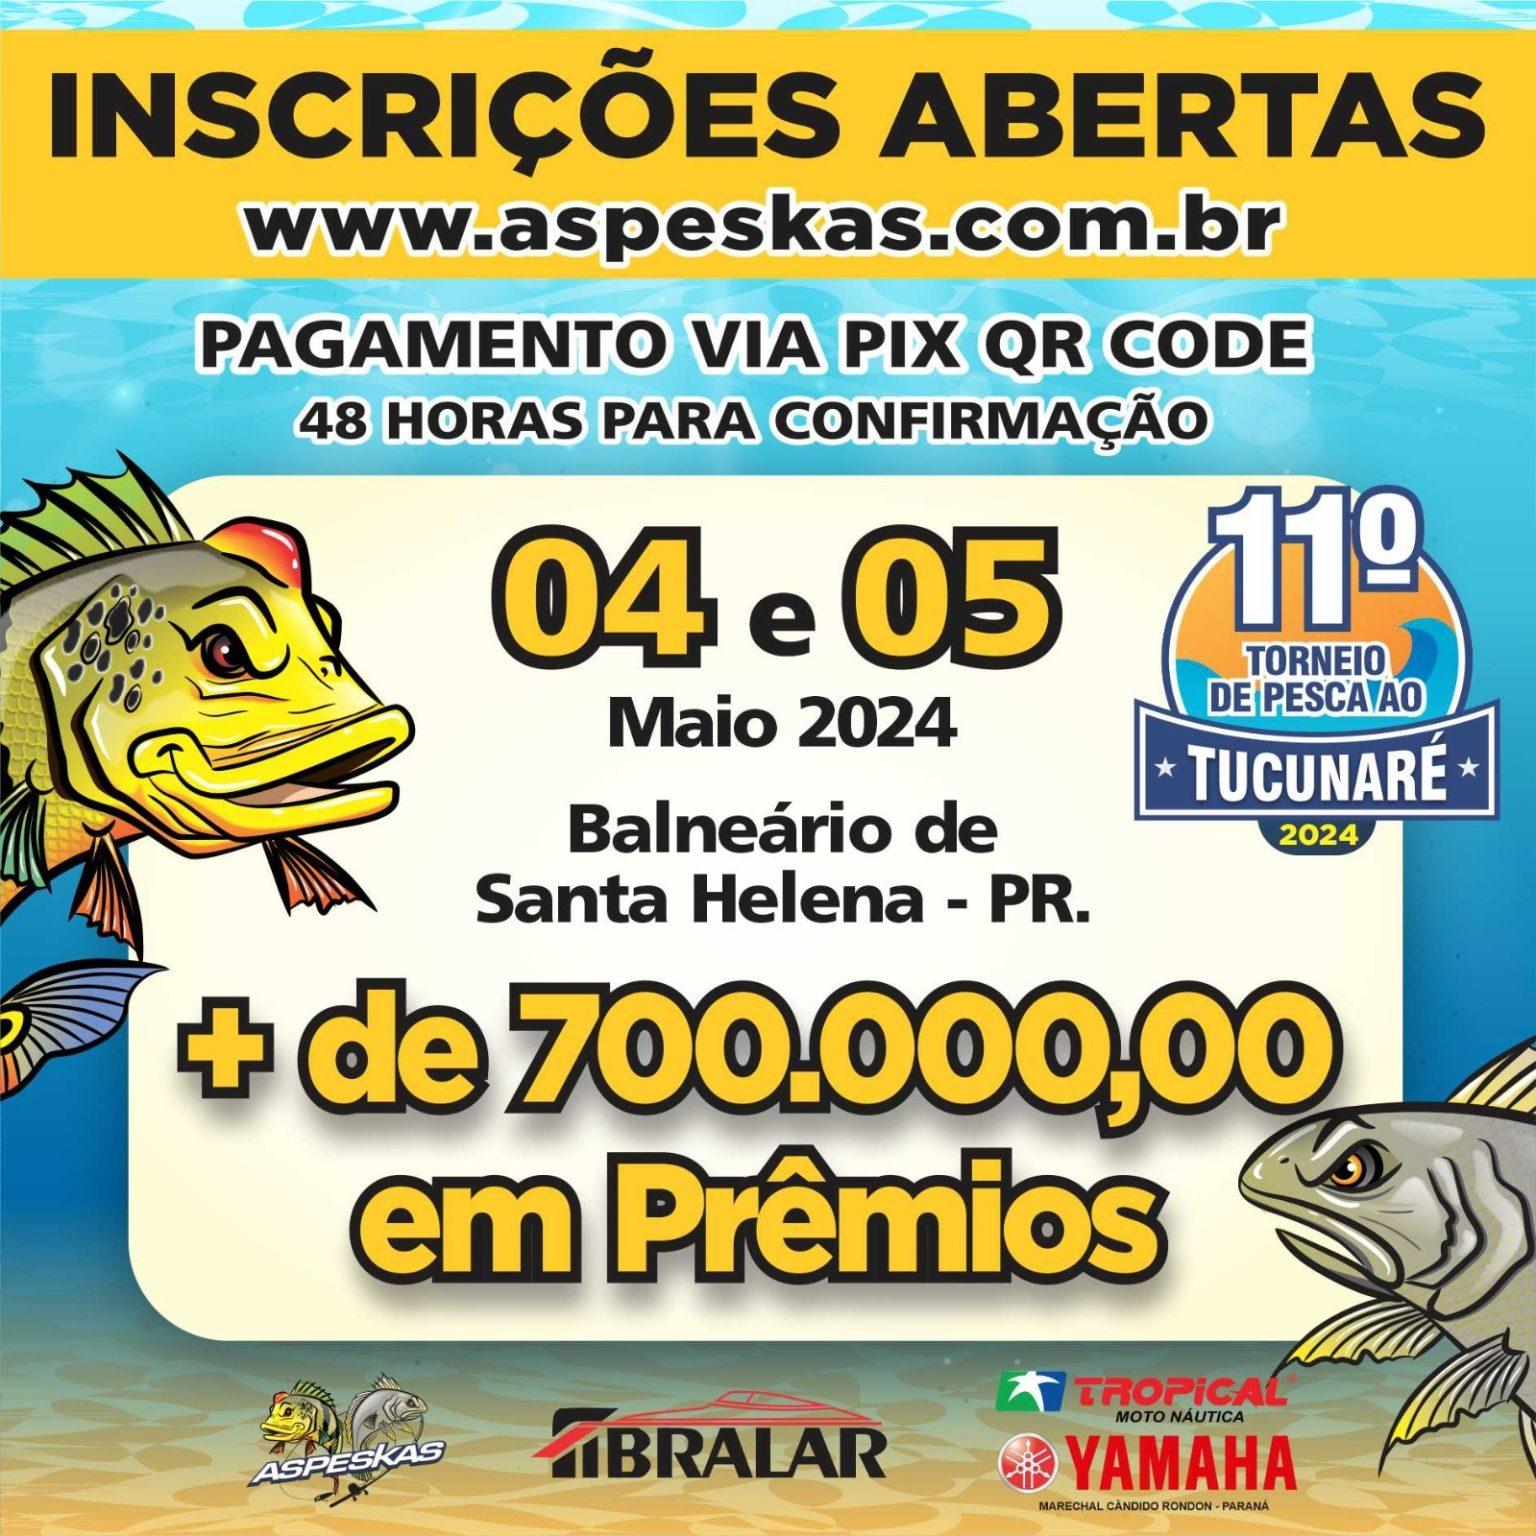 Torneio de Pesca ao Tucunaré em Santa Helena terá R$800 mil em prêmios para a 11ª edição